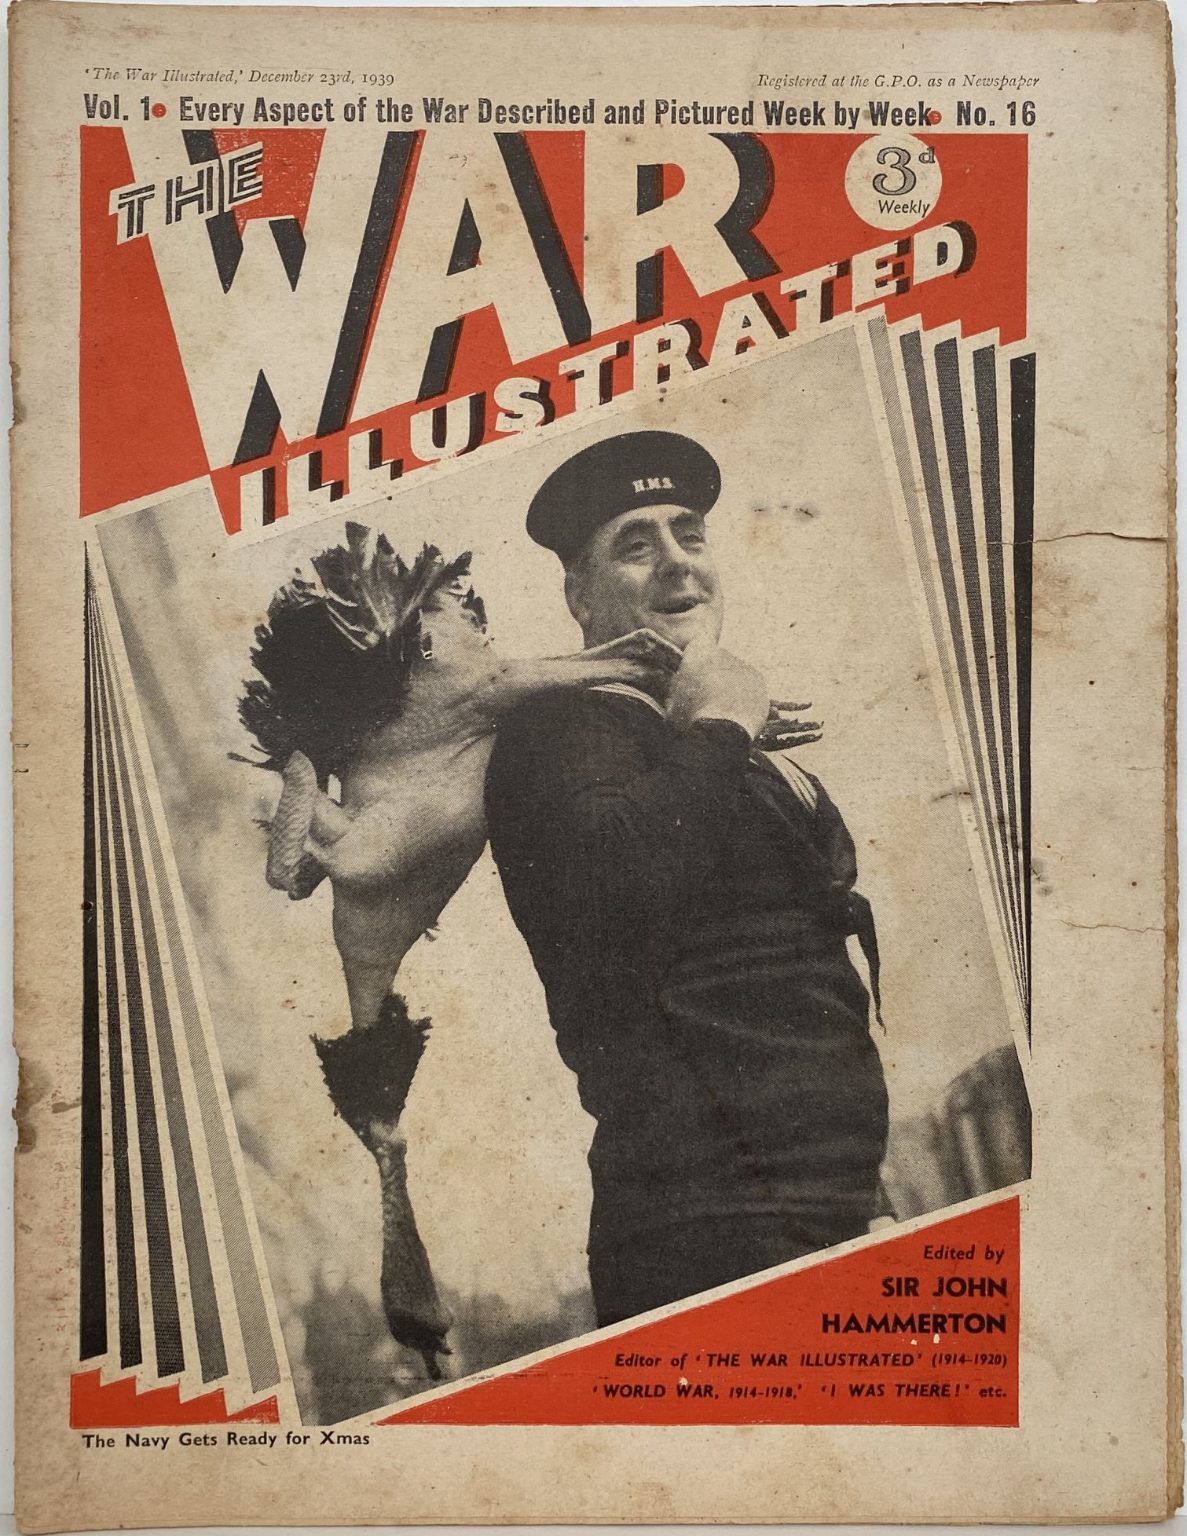 THE WAR ILLUSTRATED - Vol 1, No 16, 23rd Dec 1939